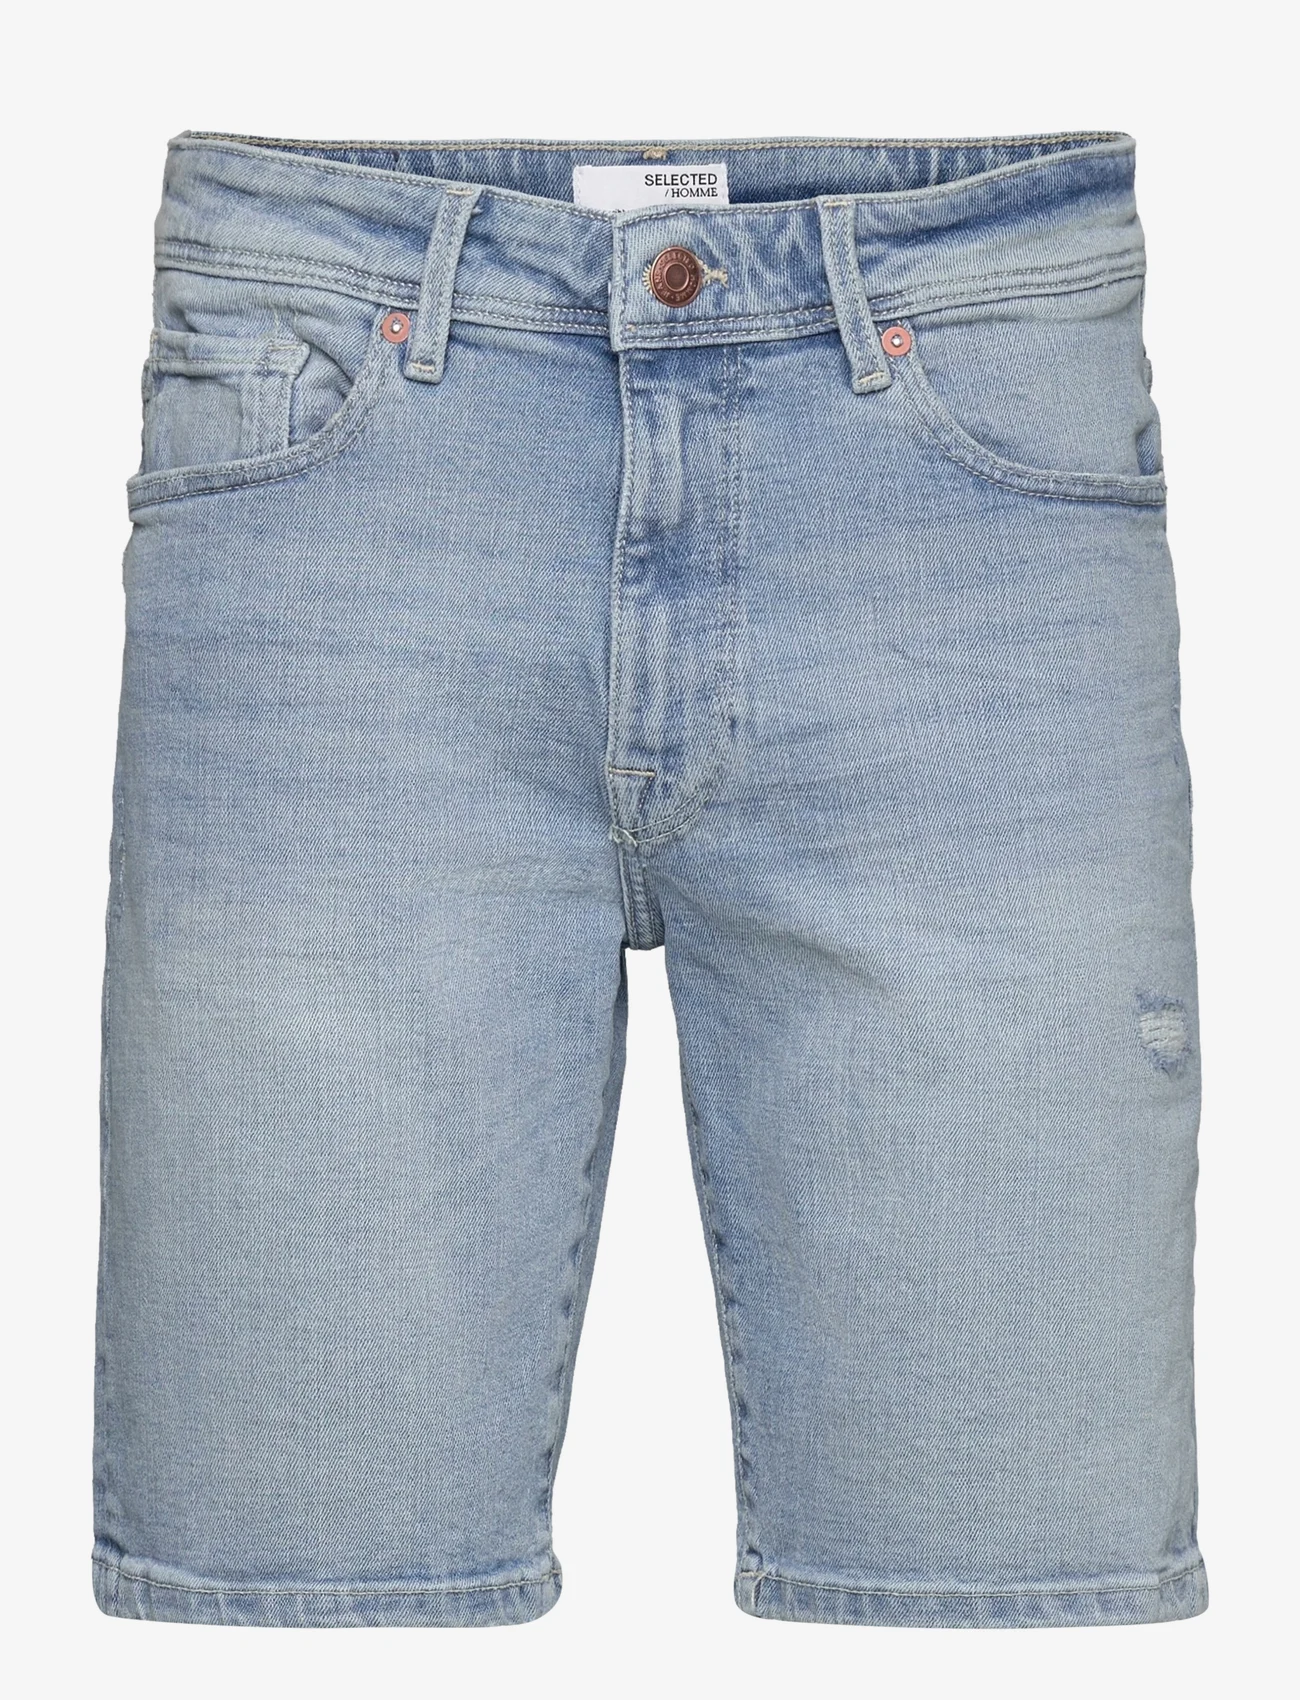 Selected Homme - SLHALEX 27415 L. BLUE DNM SHORT EX - jeansshorts - light blue denim - 0